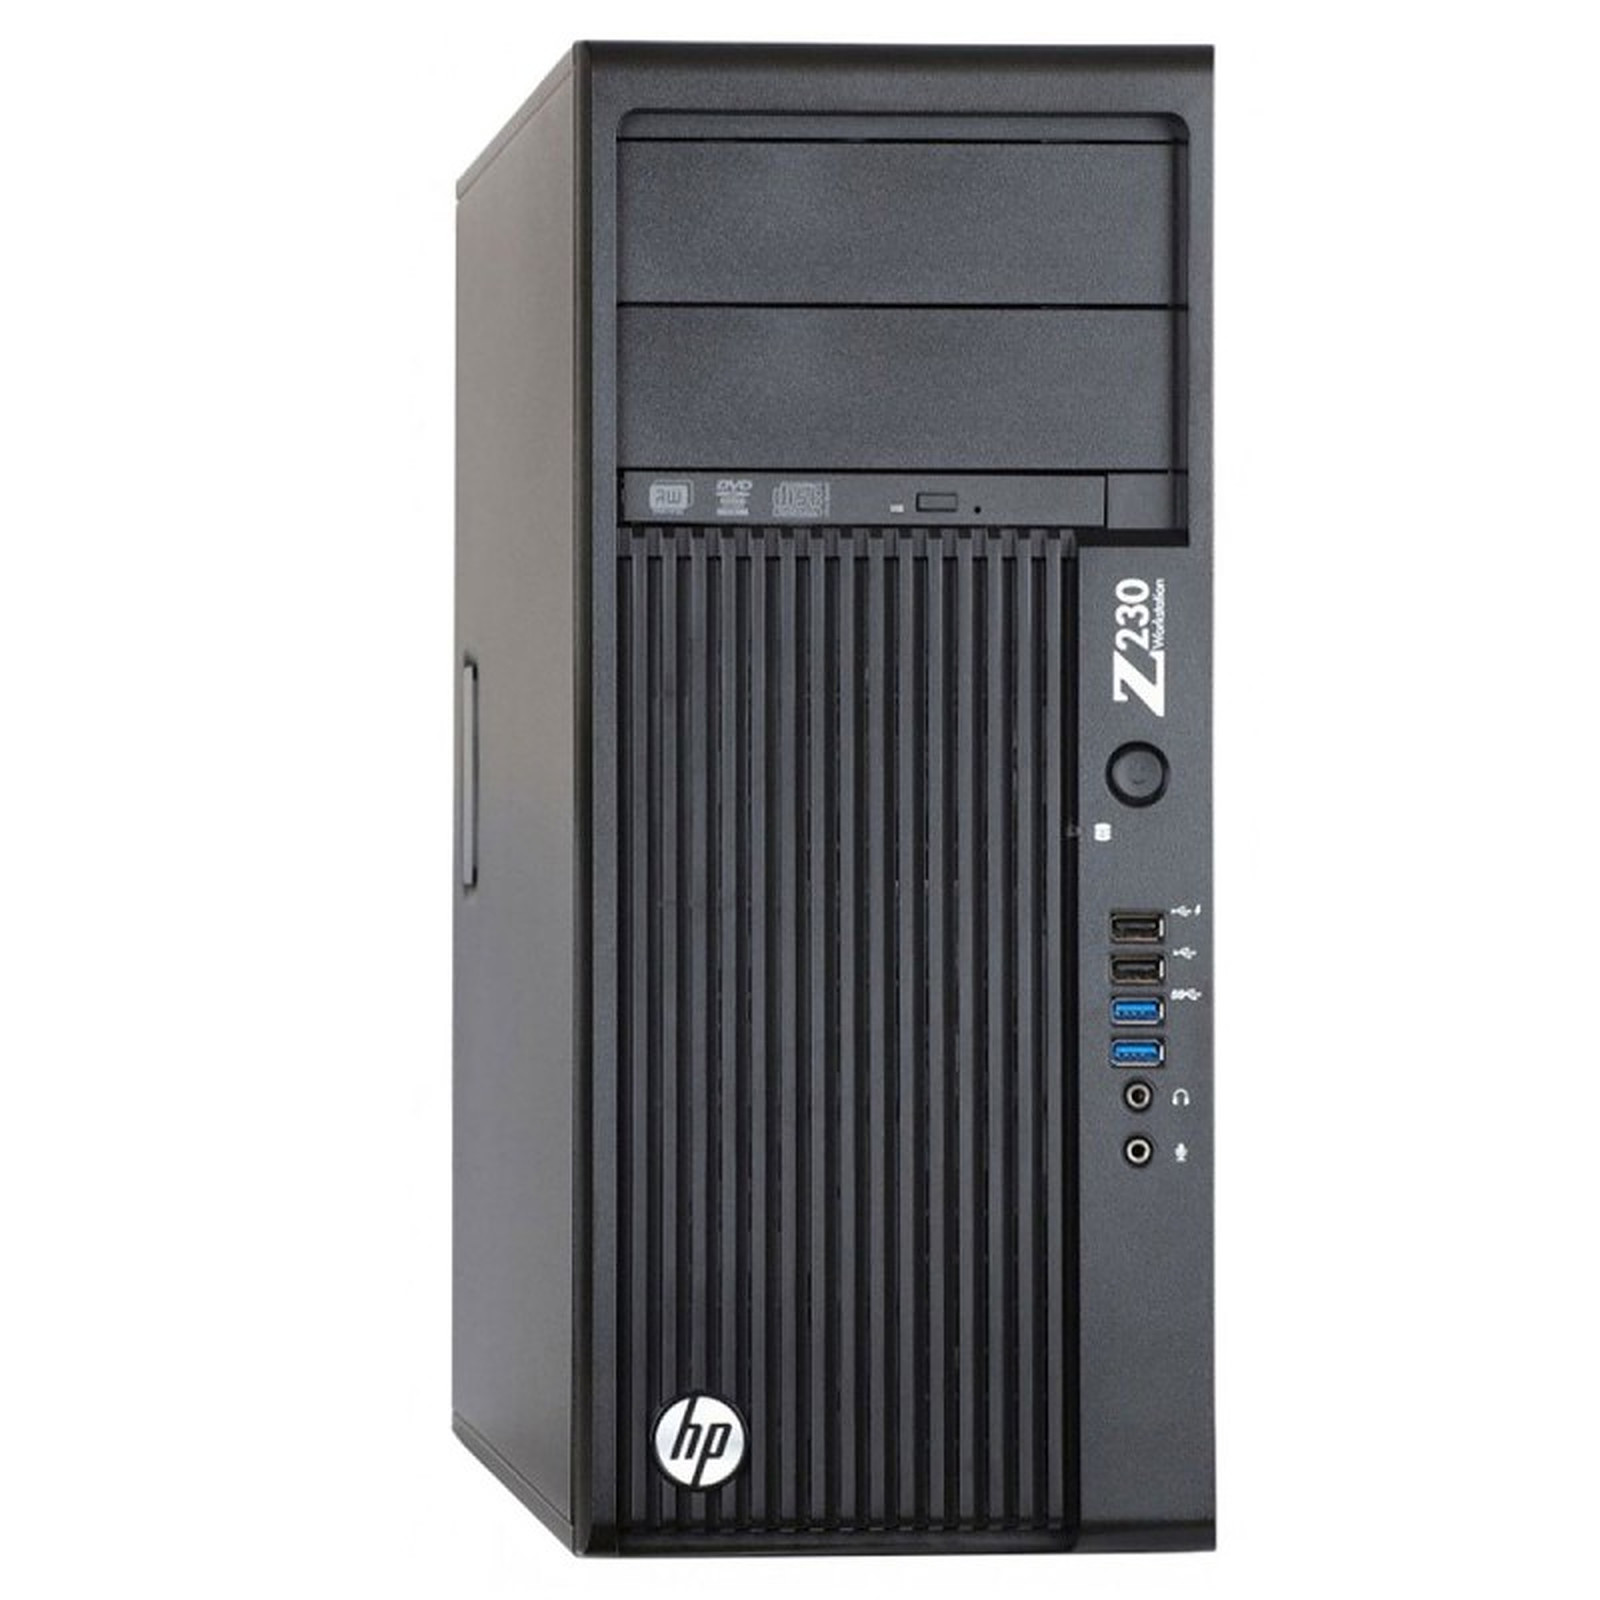 HP WorkStation Z230 Tour (62703) · Reconditionne - PC de bureau reconditionne HP